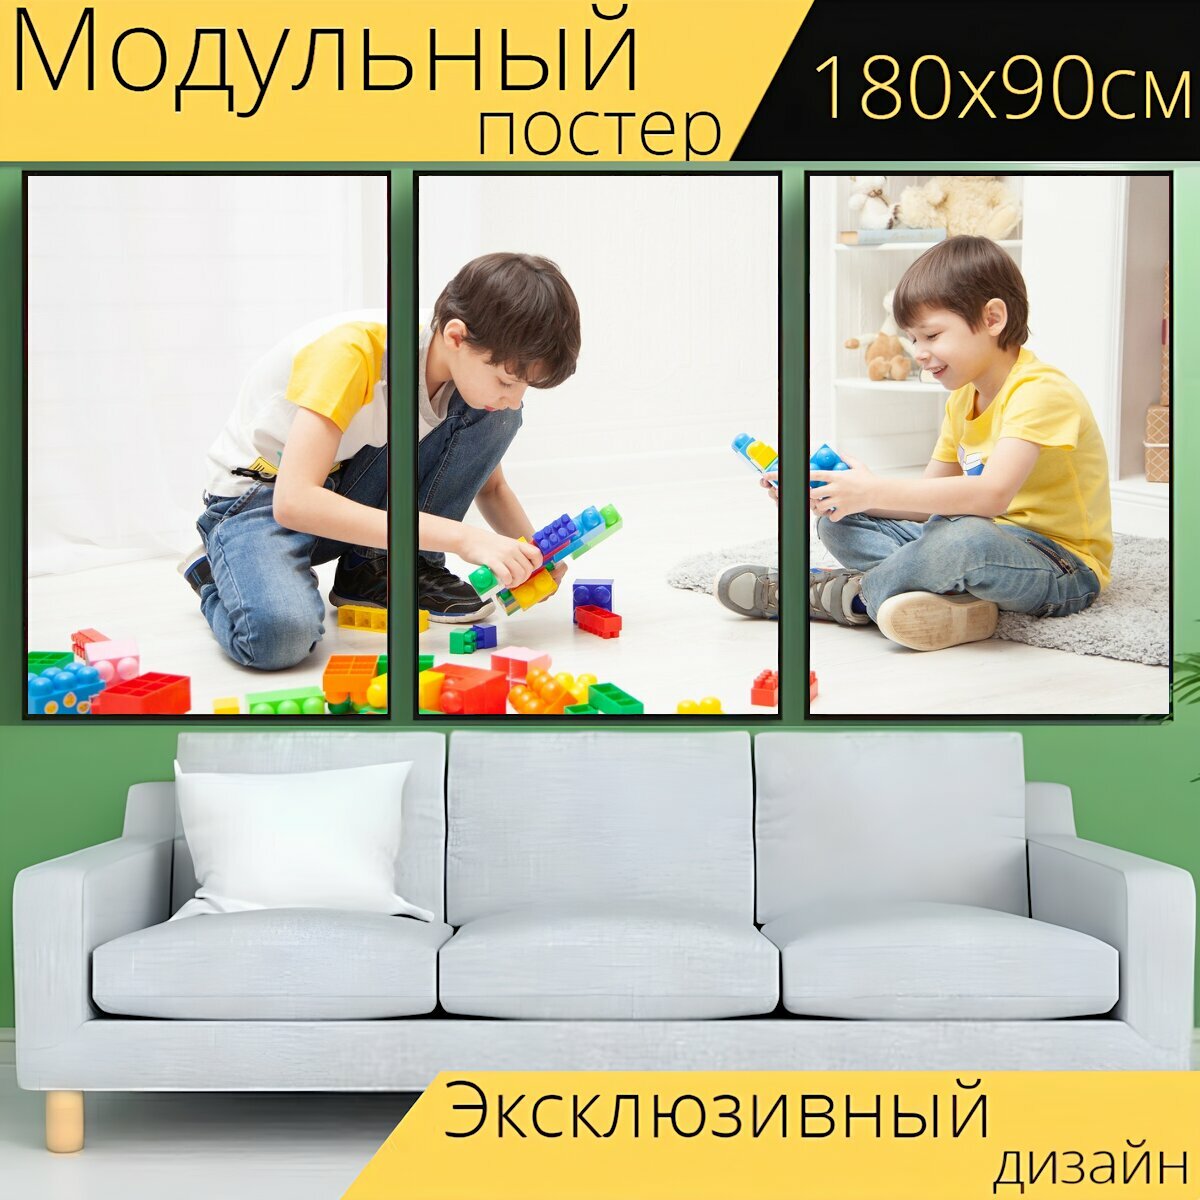 Модульный постер "Дети, играют, игры" 180 x 90 см. для интерьера